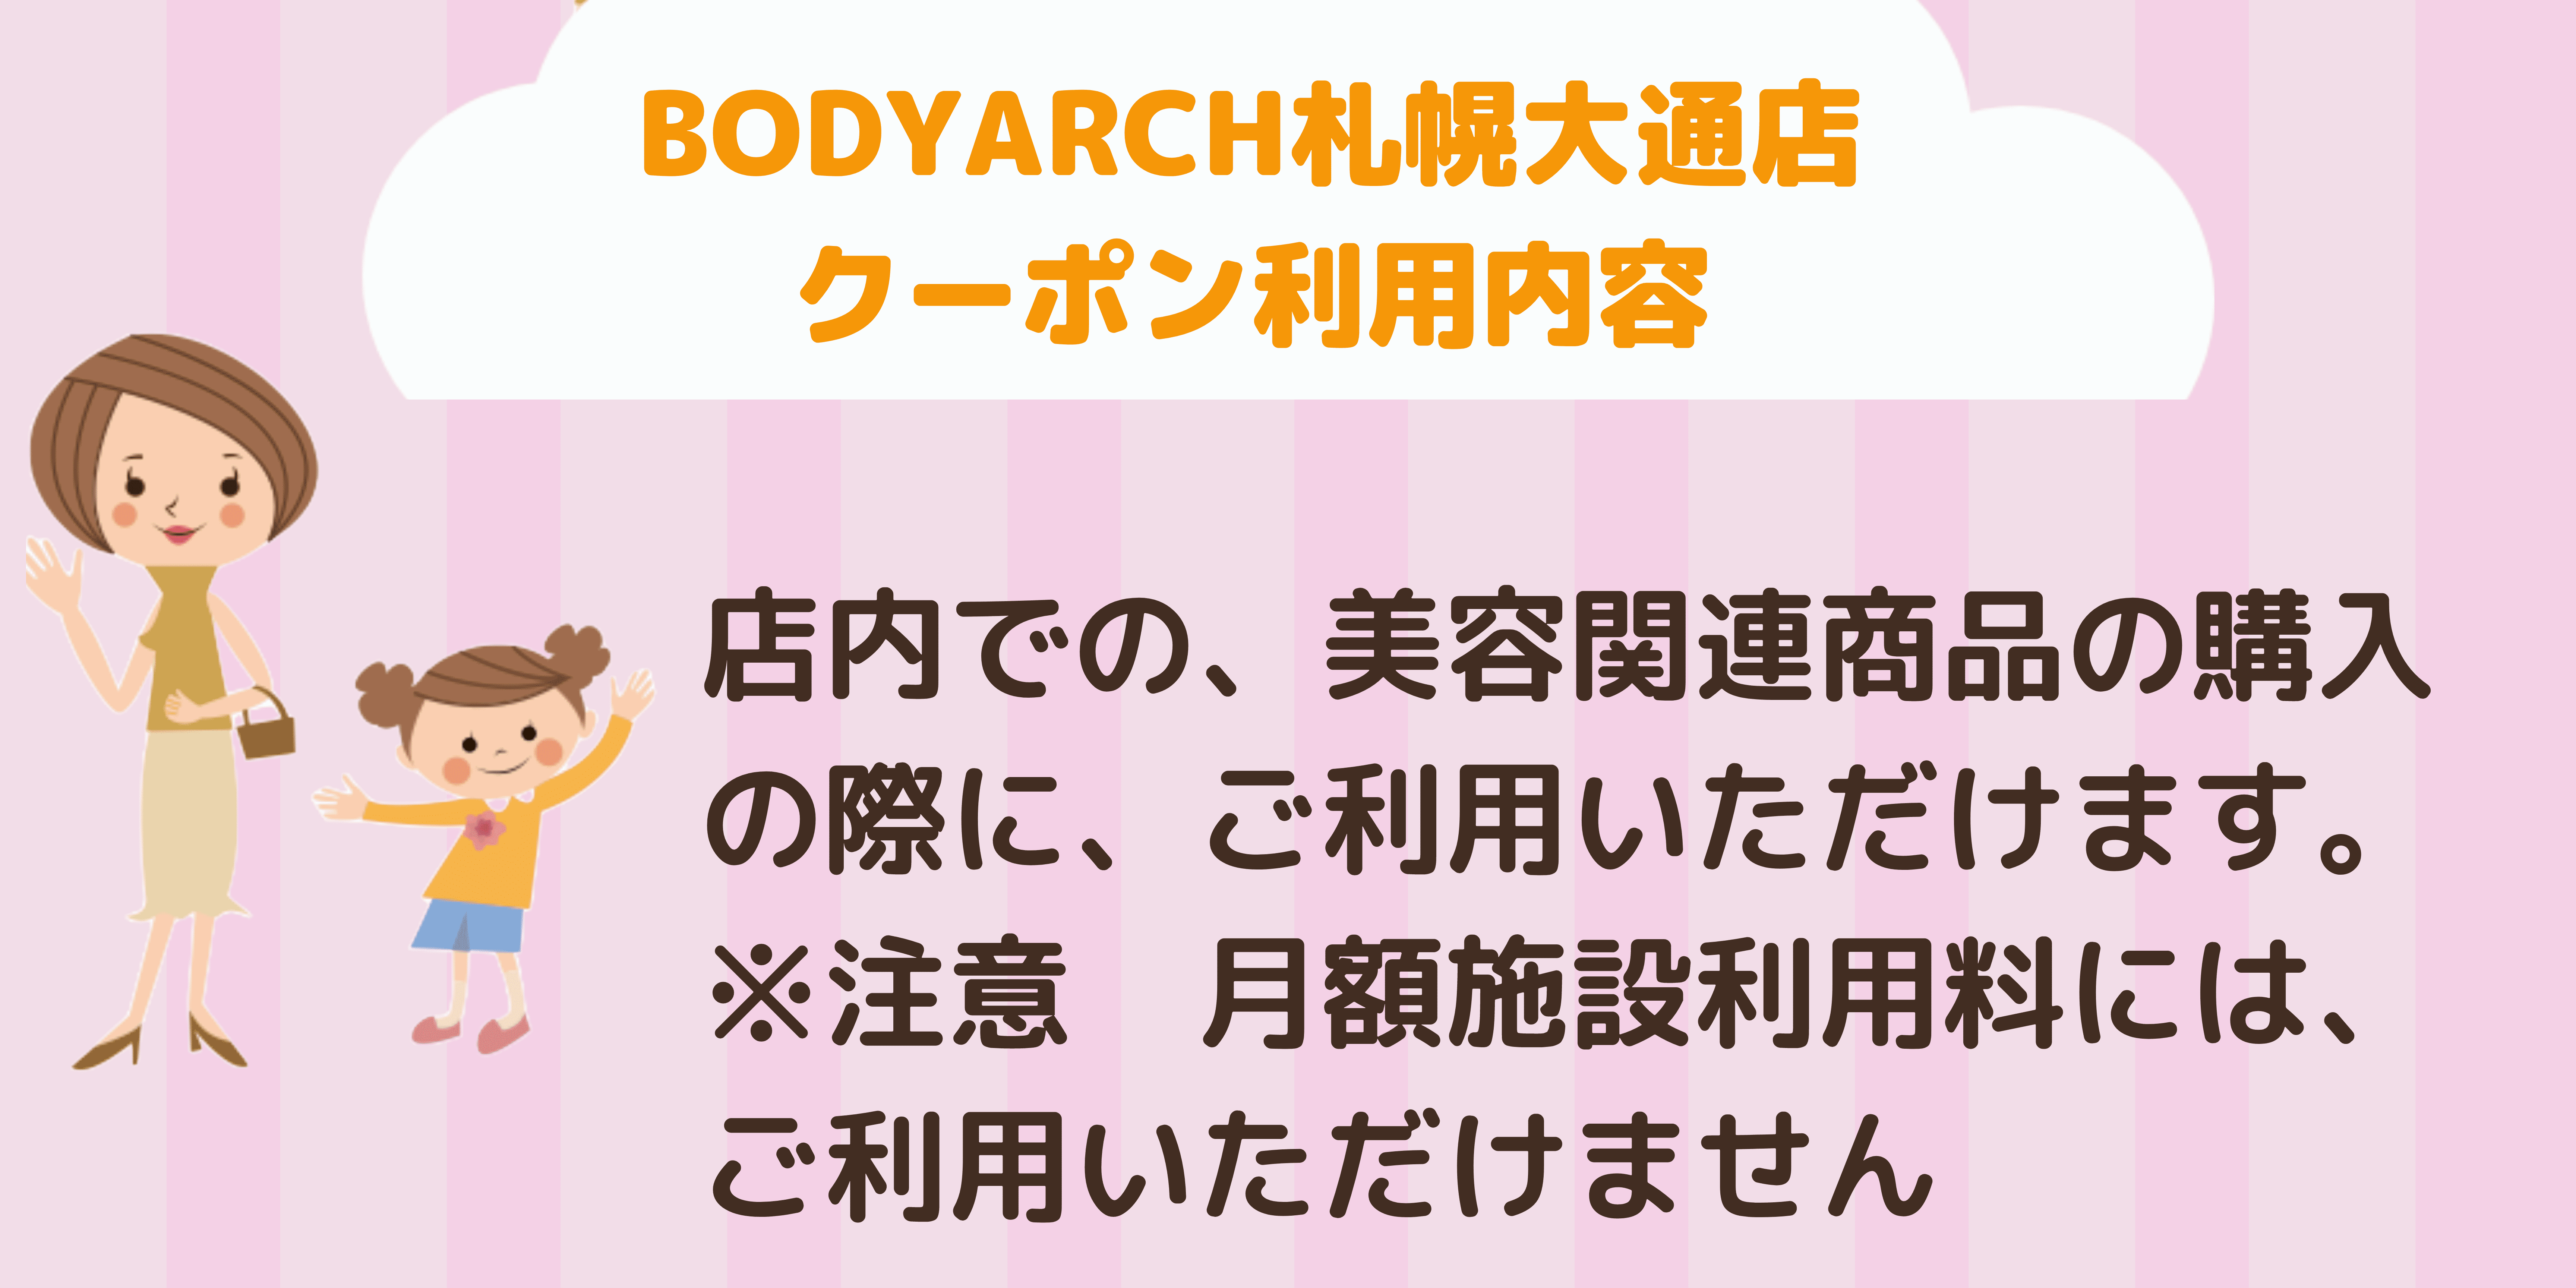 BODYARCH札幌大通店